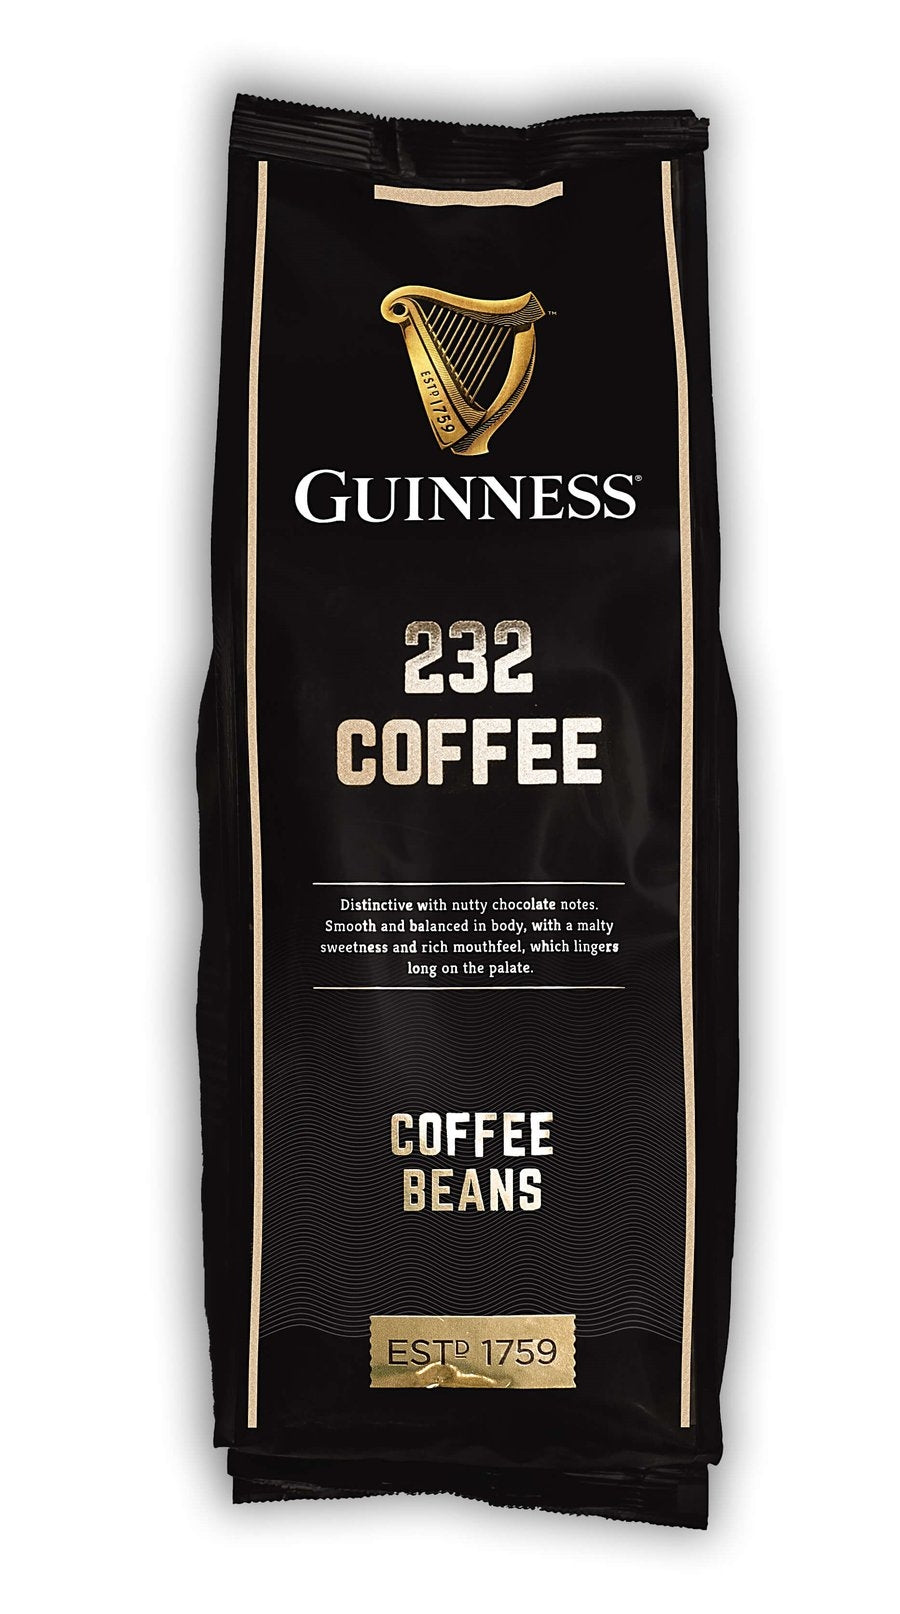 Guinness UK's Guinness Coffee Beans - 1kg.